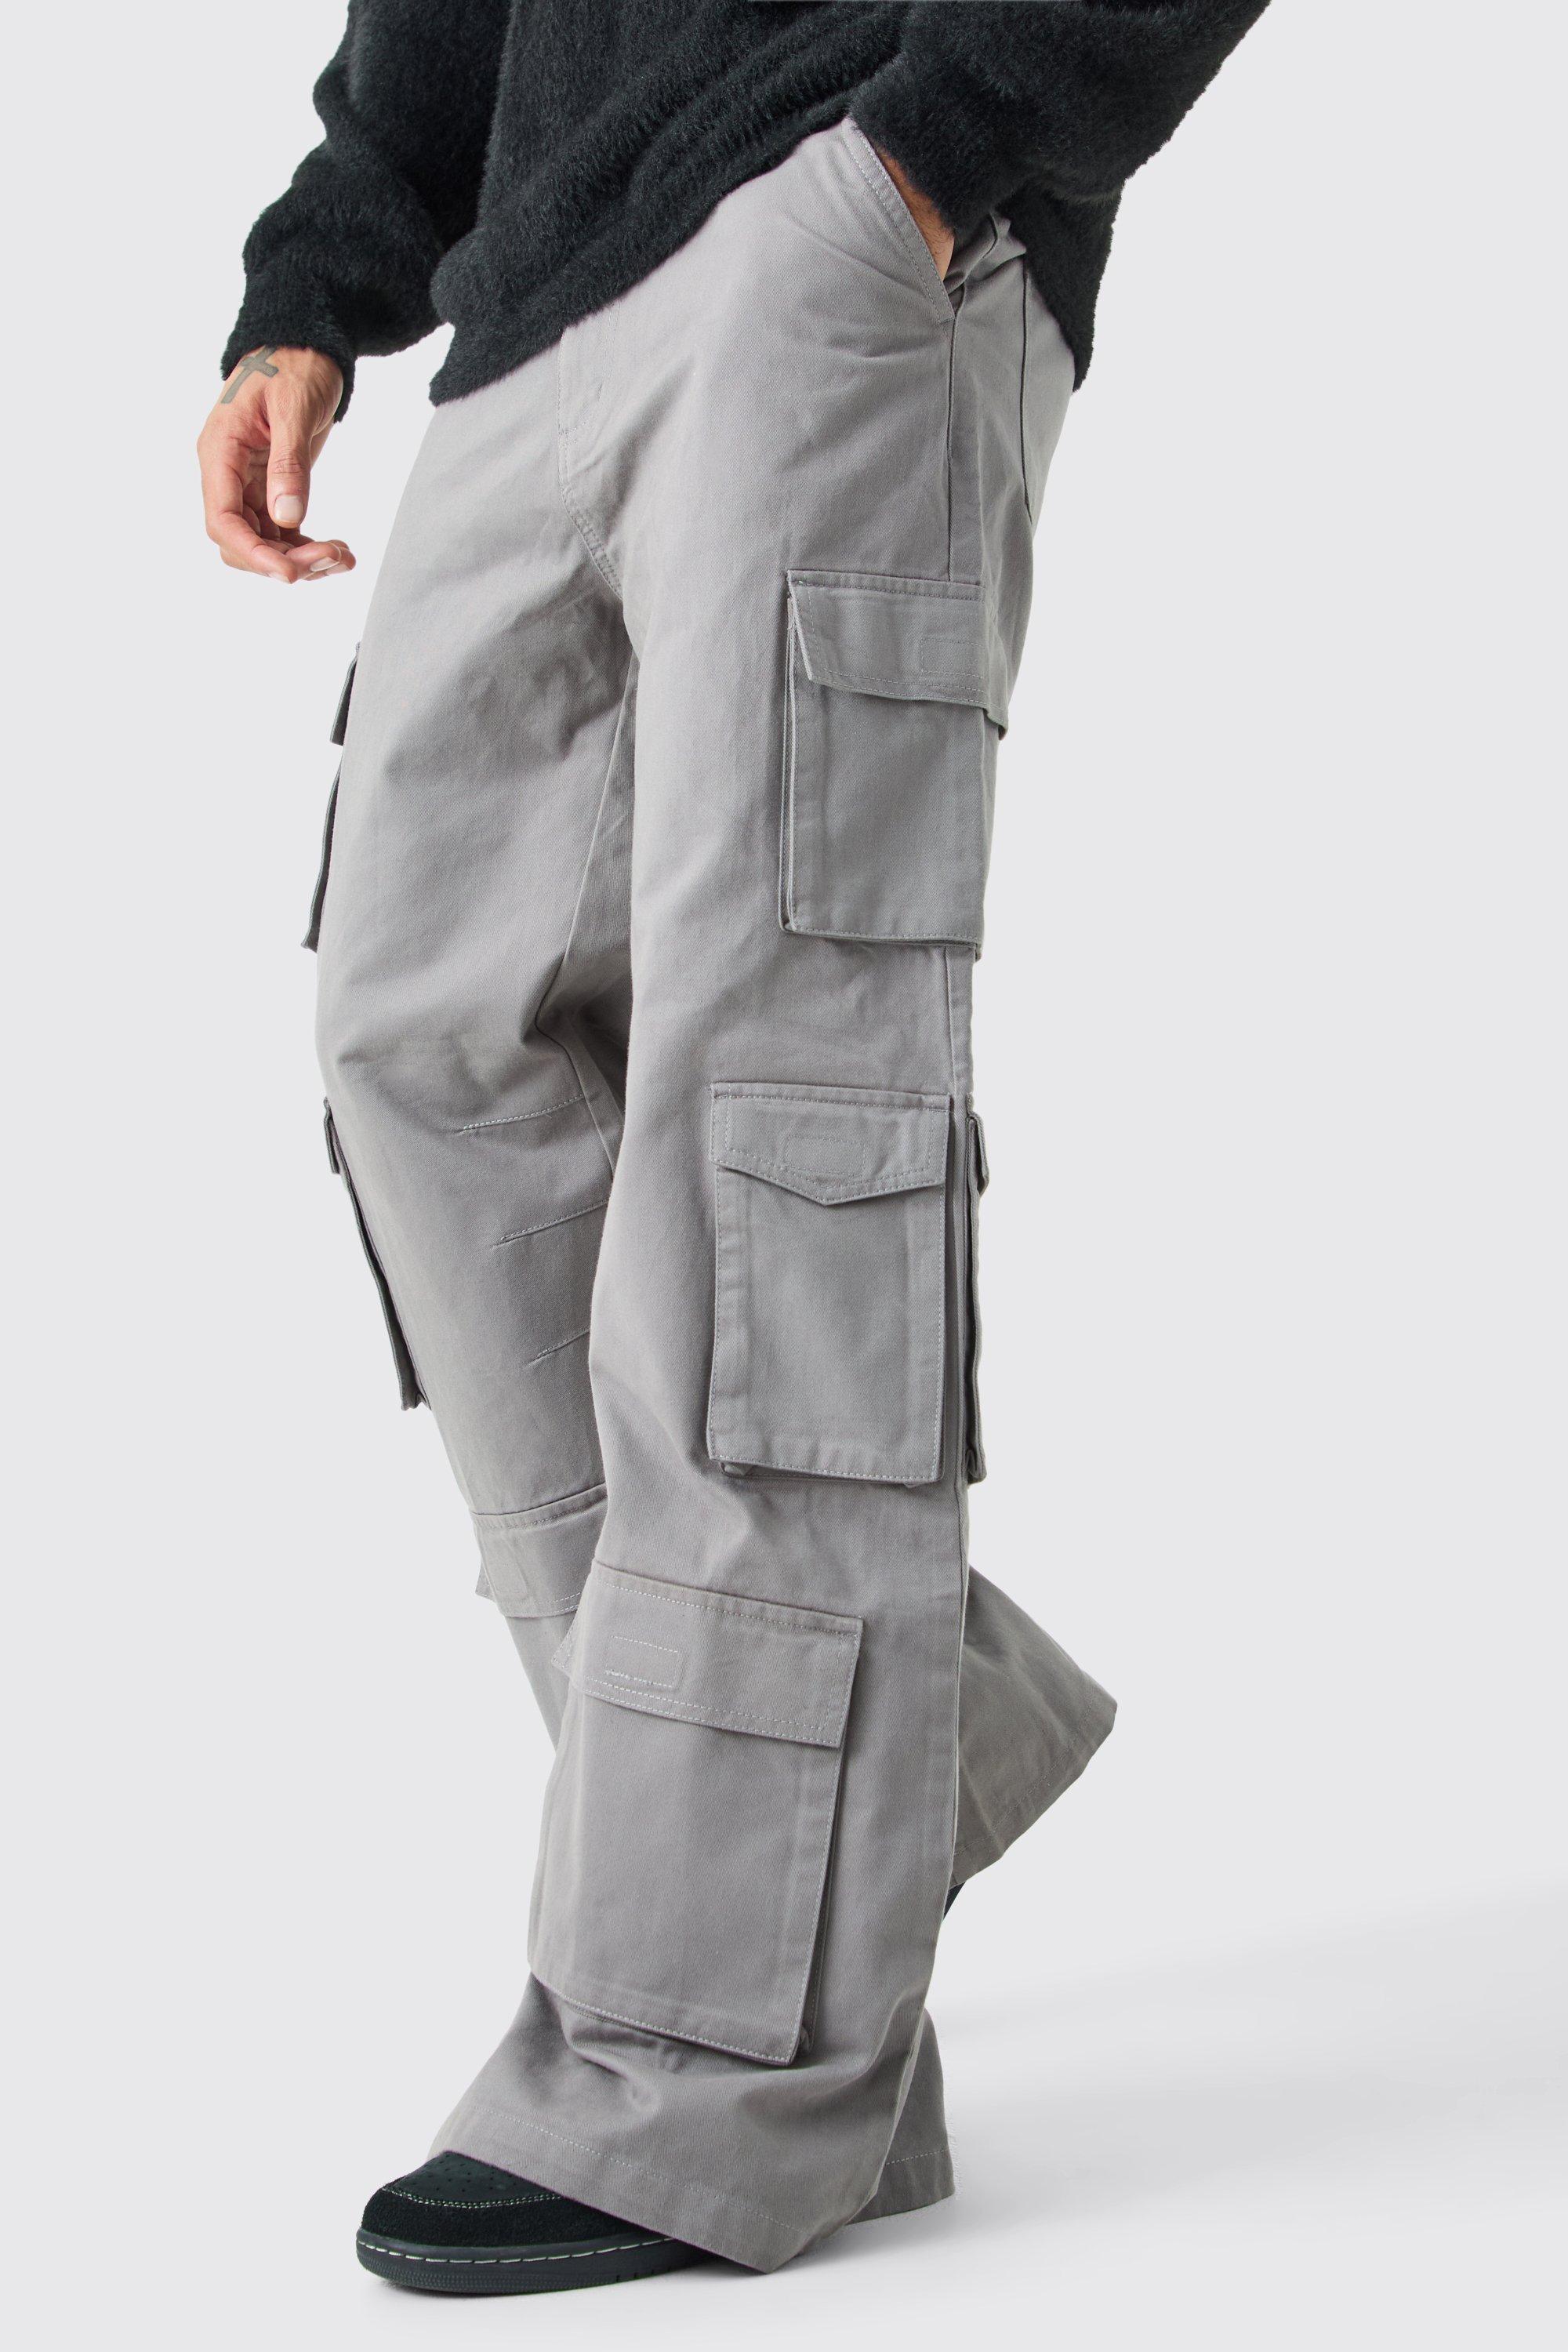 Image of Pantaloni super comodi in denim rigido con tasche Cargo multiple, Grigio